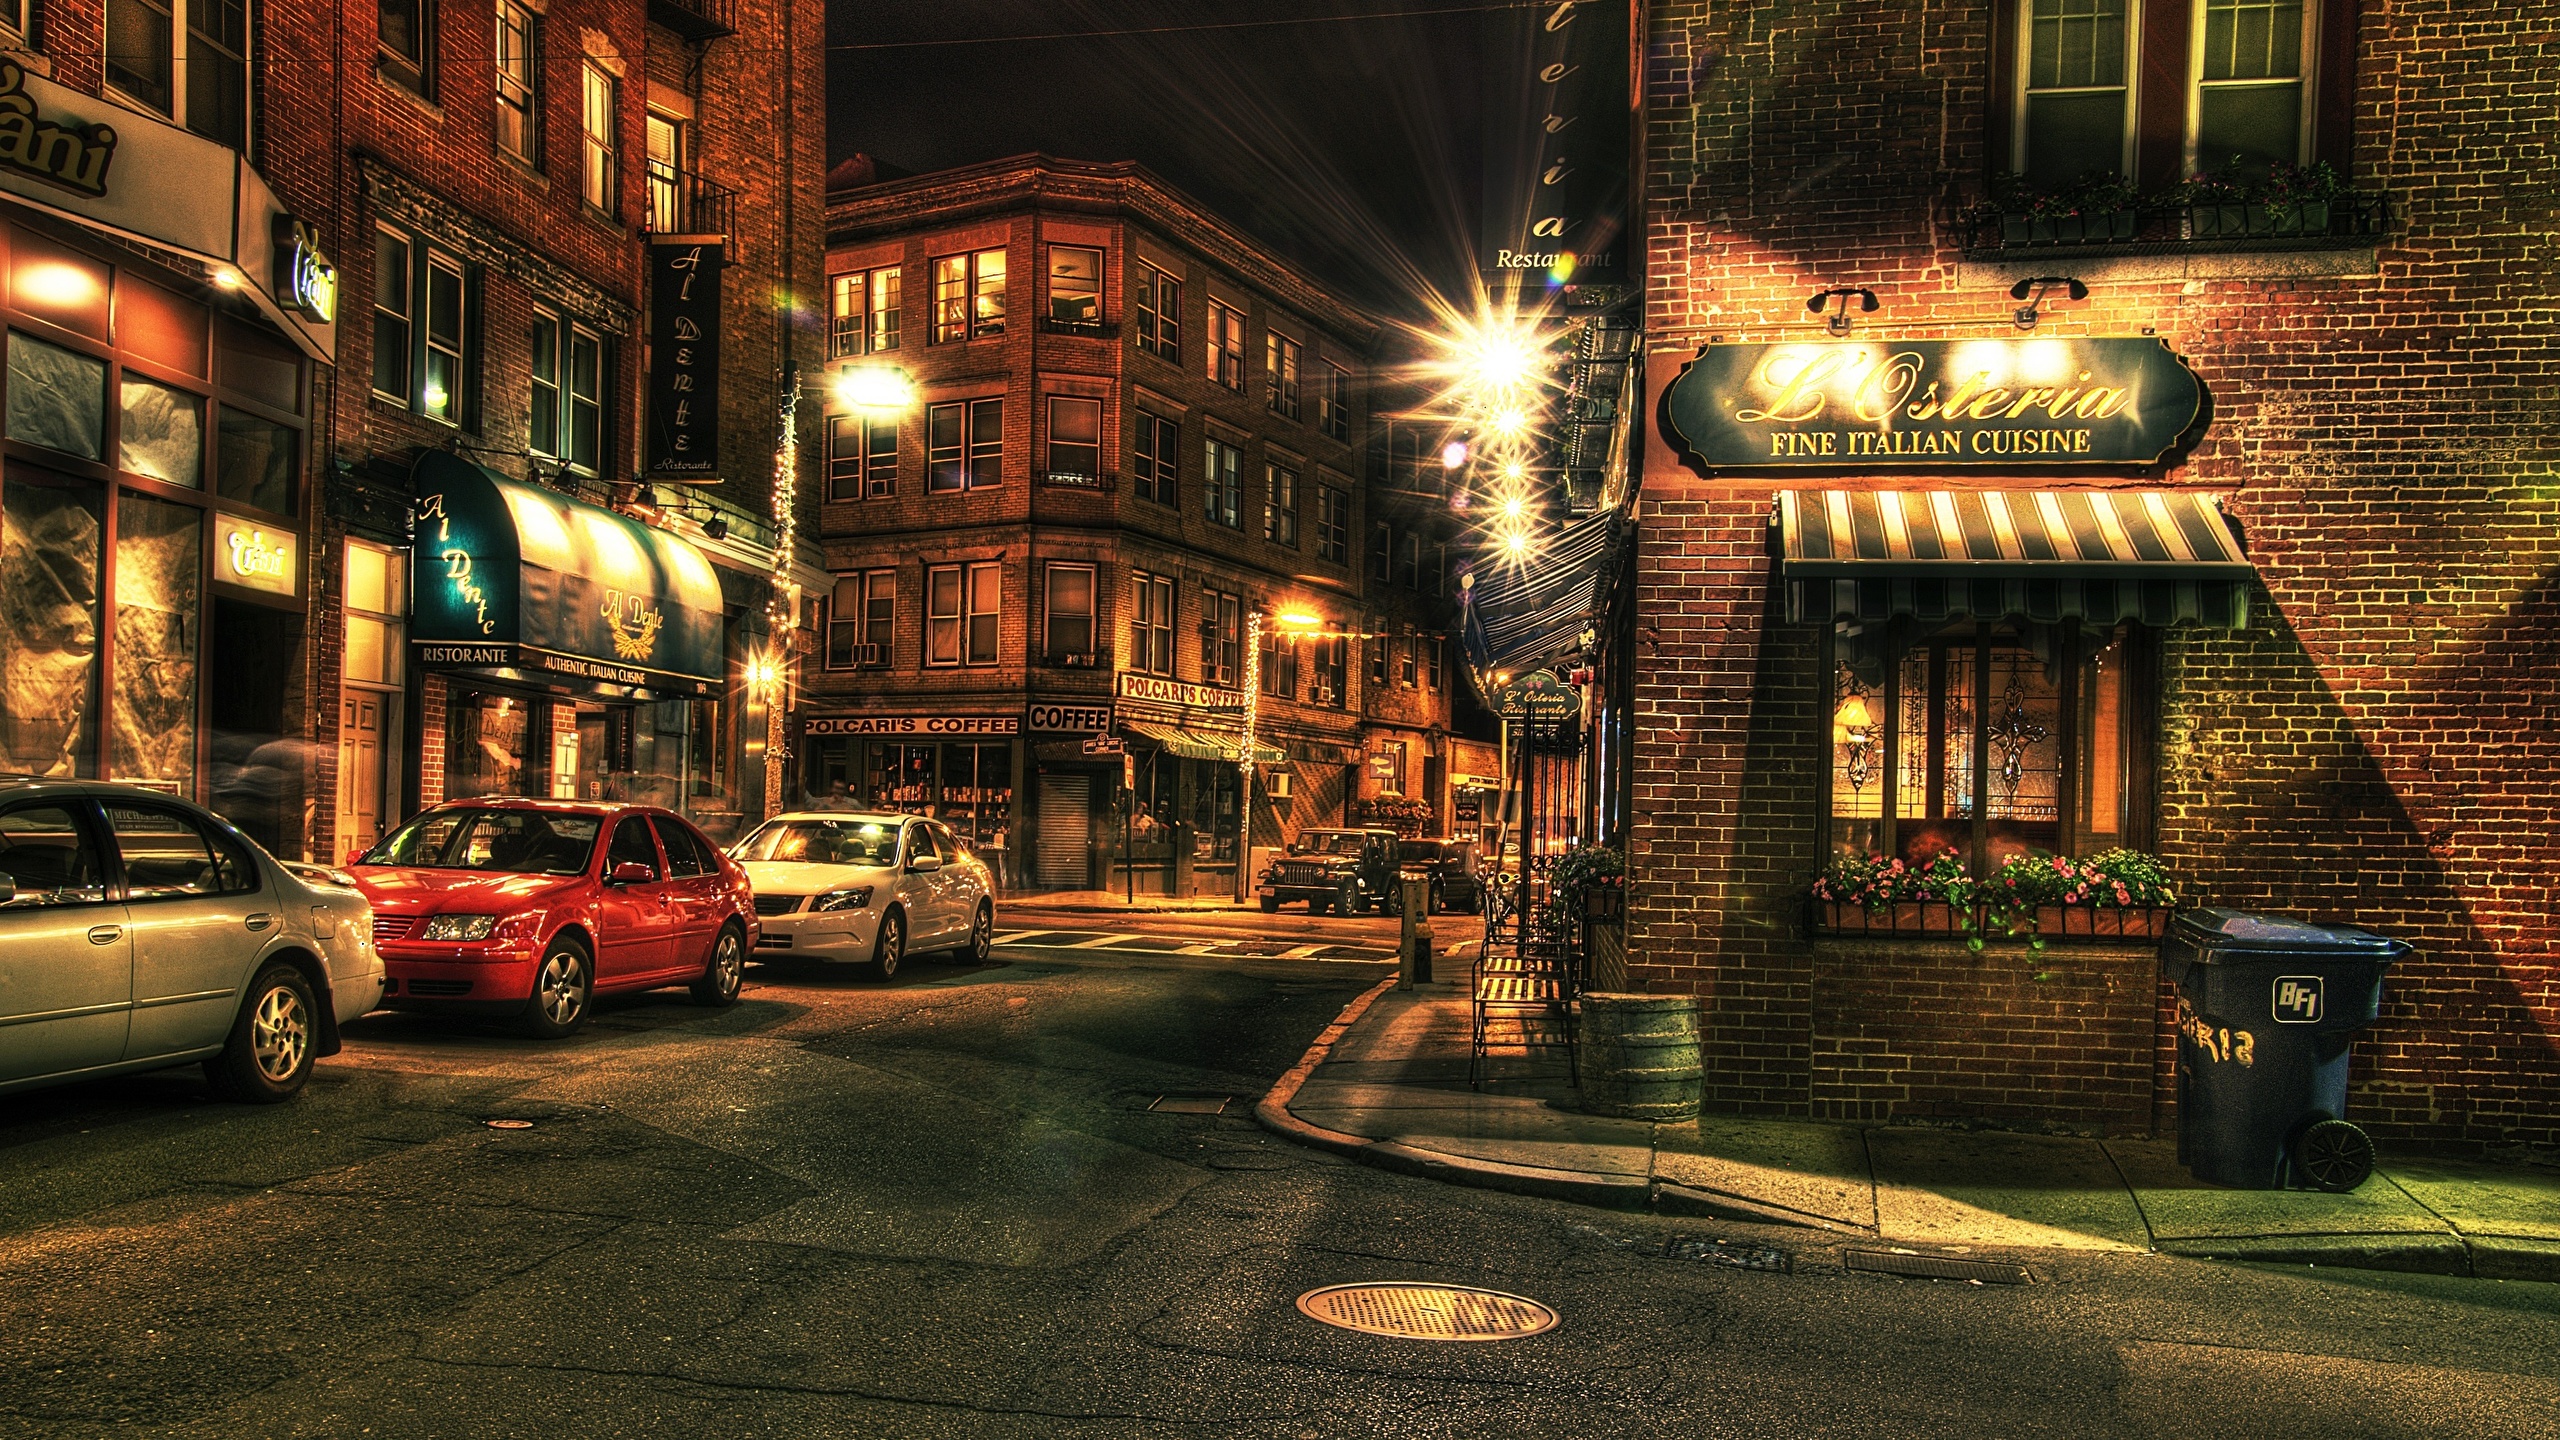 壁紙 2560x1440 住宅 アメリカ合衆国 ボストン Massachusetts ストリート 街灯 ハイダイナミックレンジ合成 都市 自動車 ダウンロード 写真